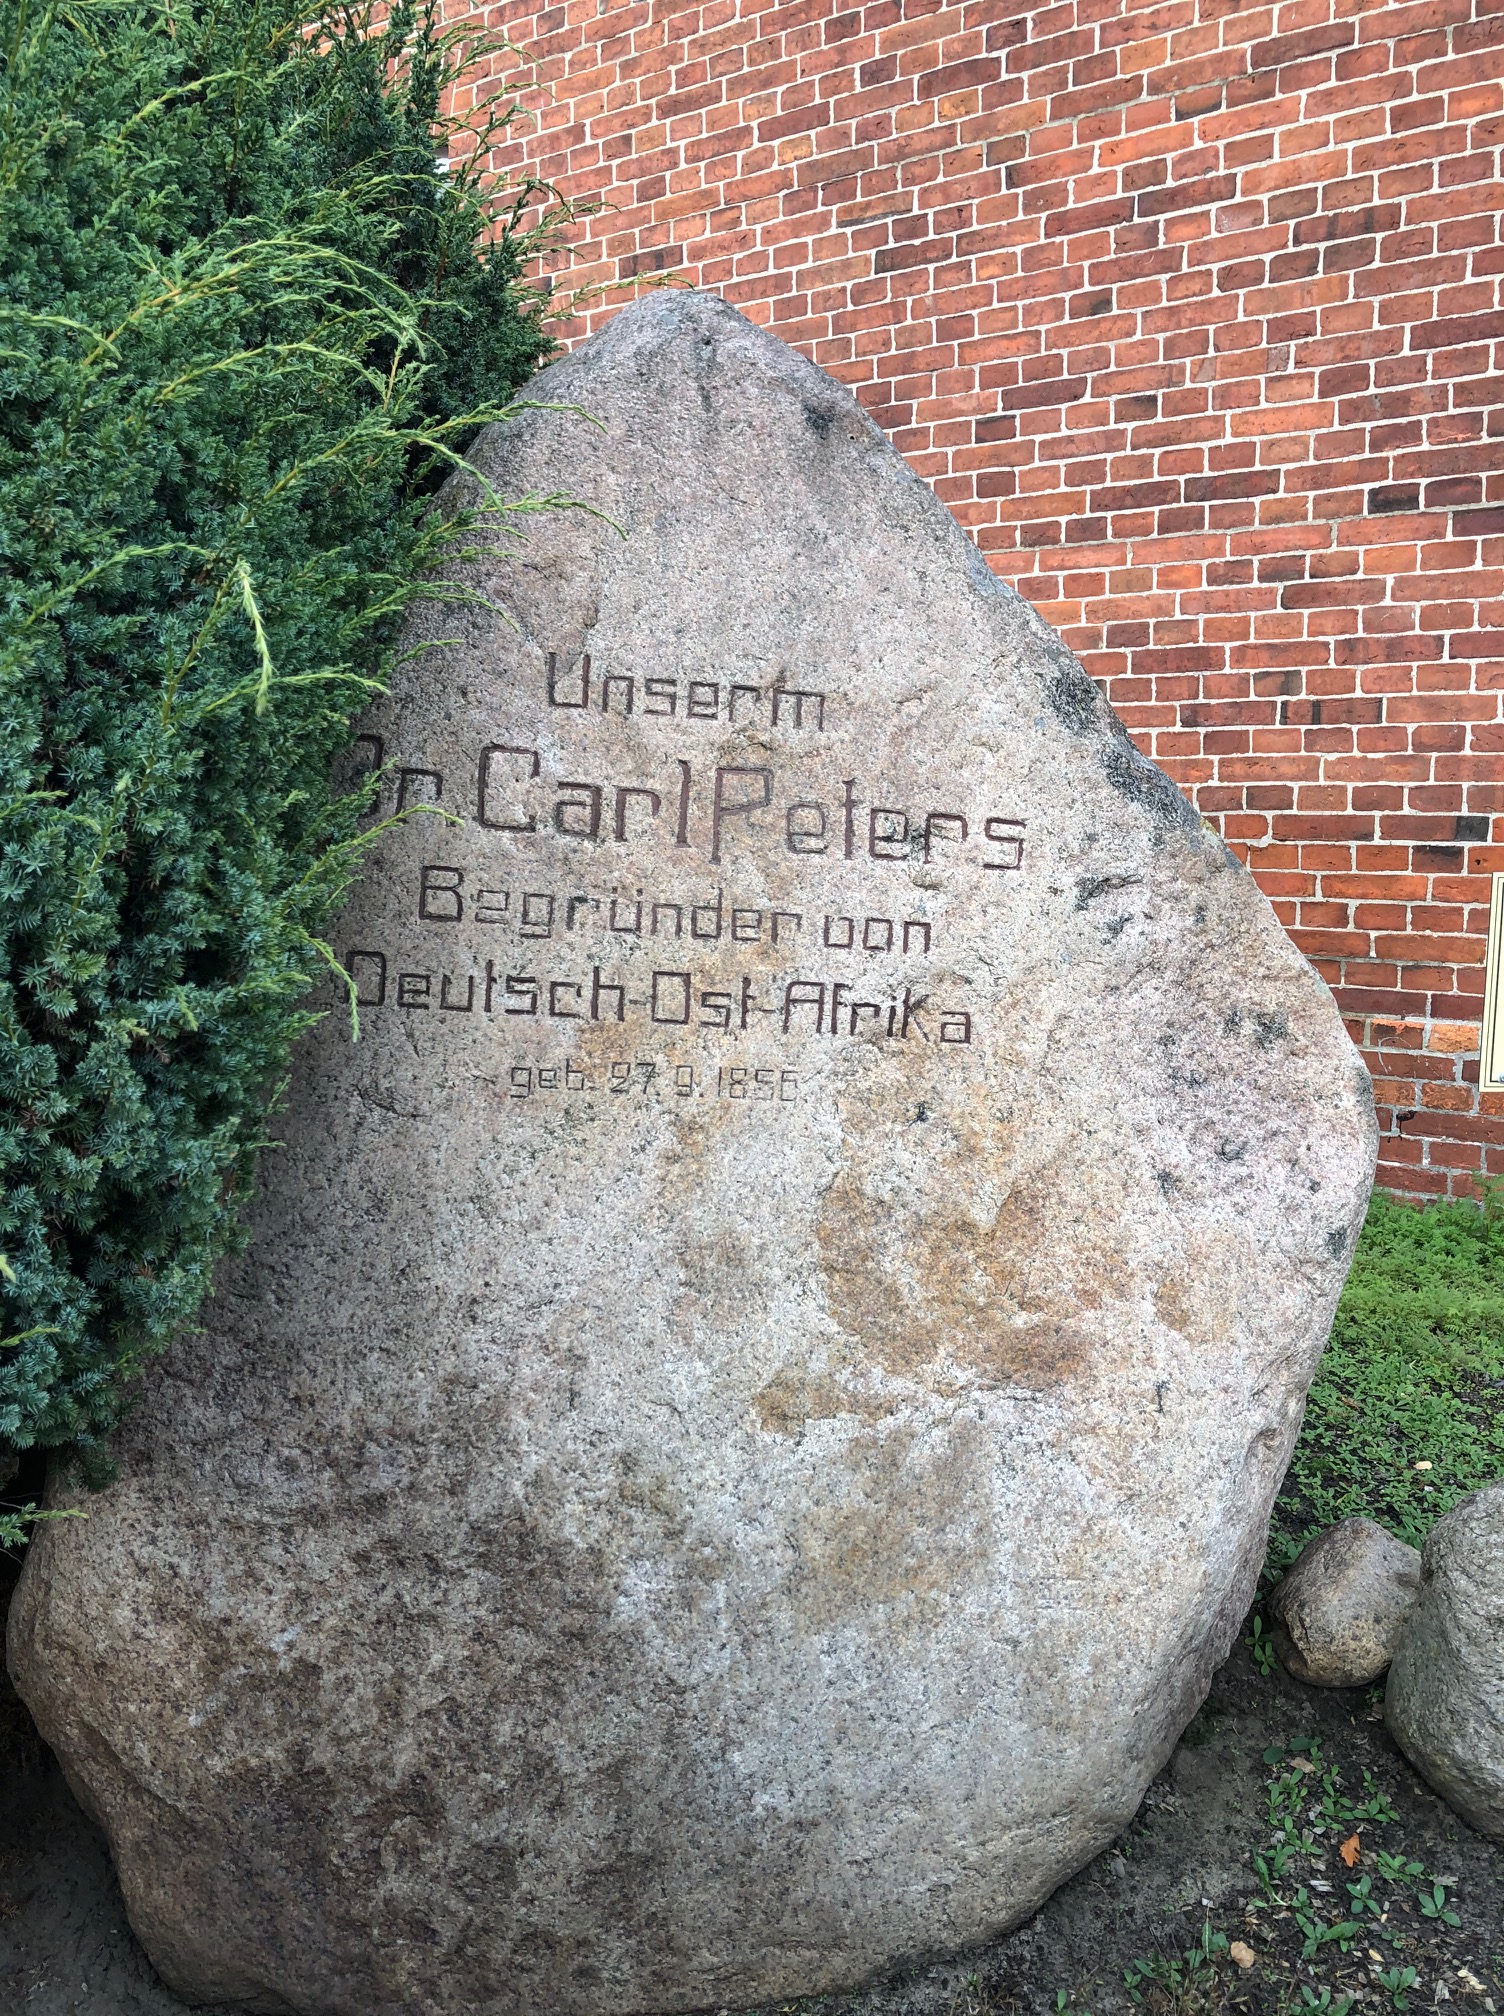 Der Carl-Peters-Gedenkstein in Neuhaus/Elbe. Kein Stein der Weisen?